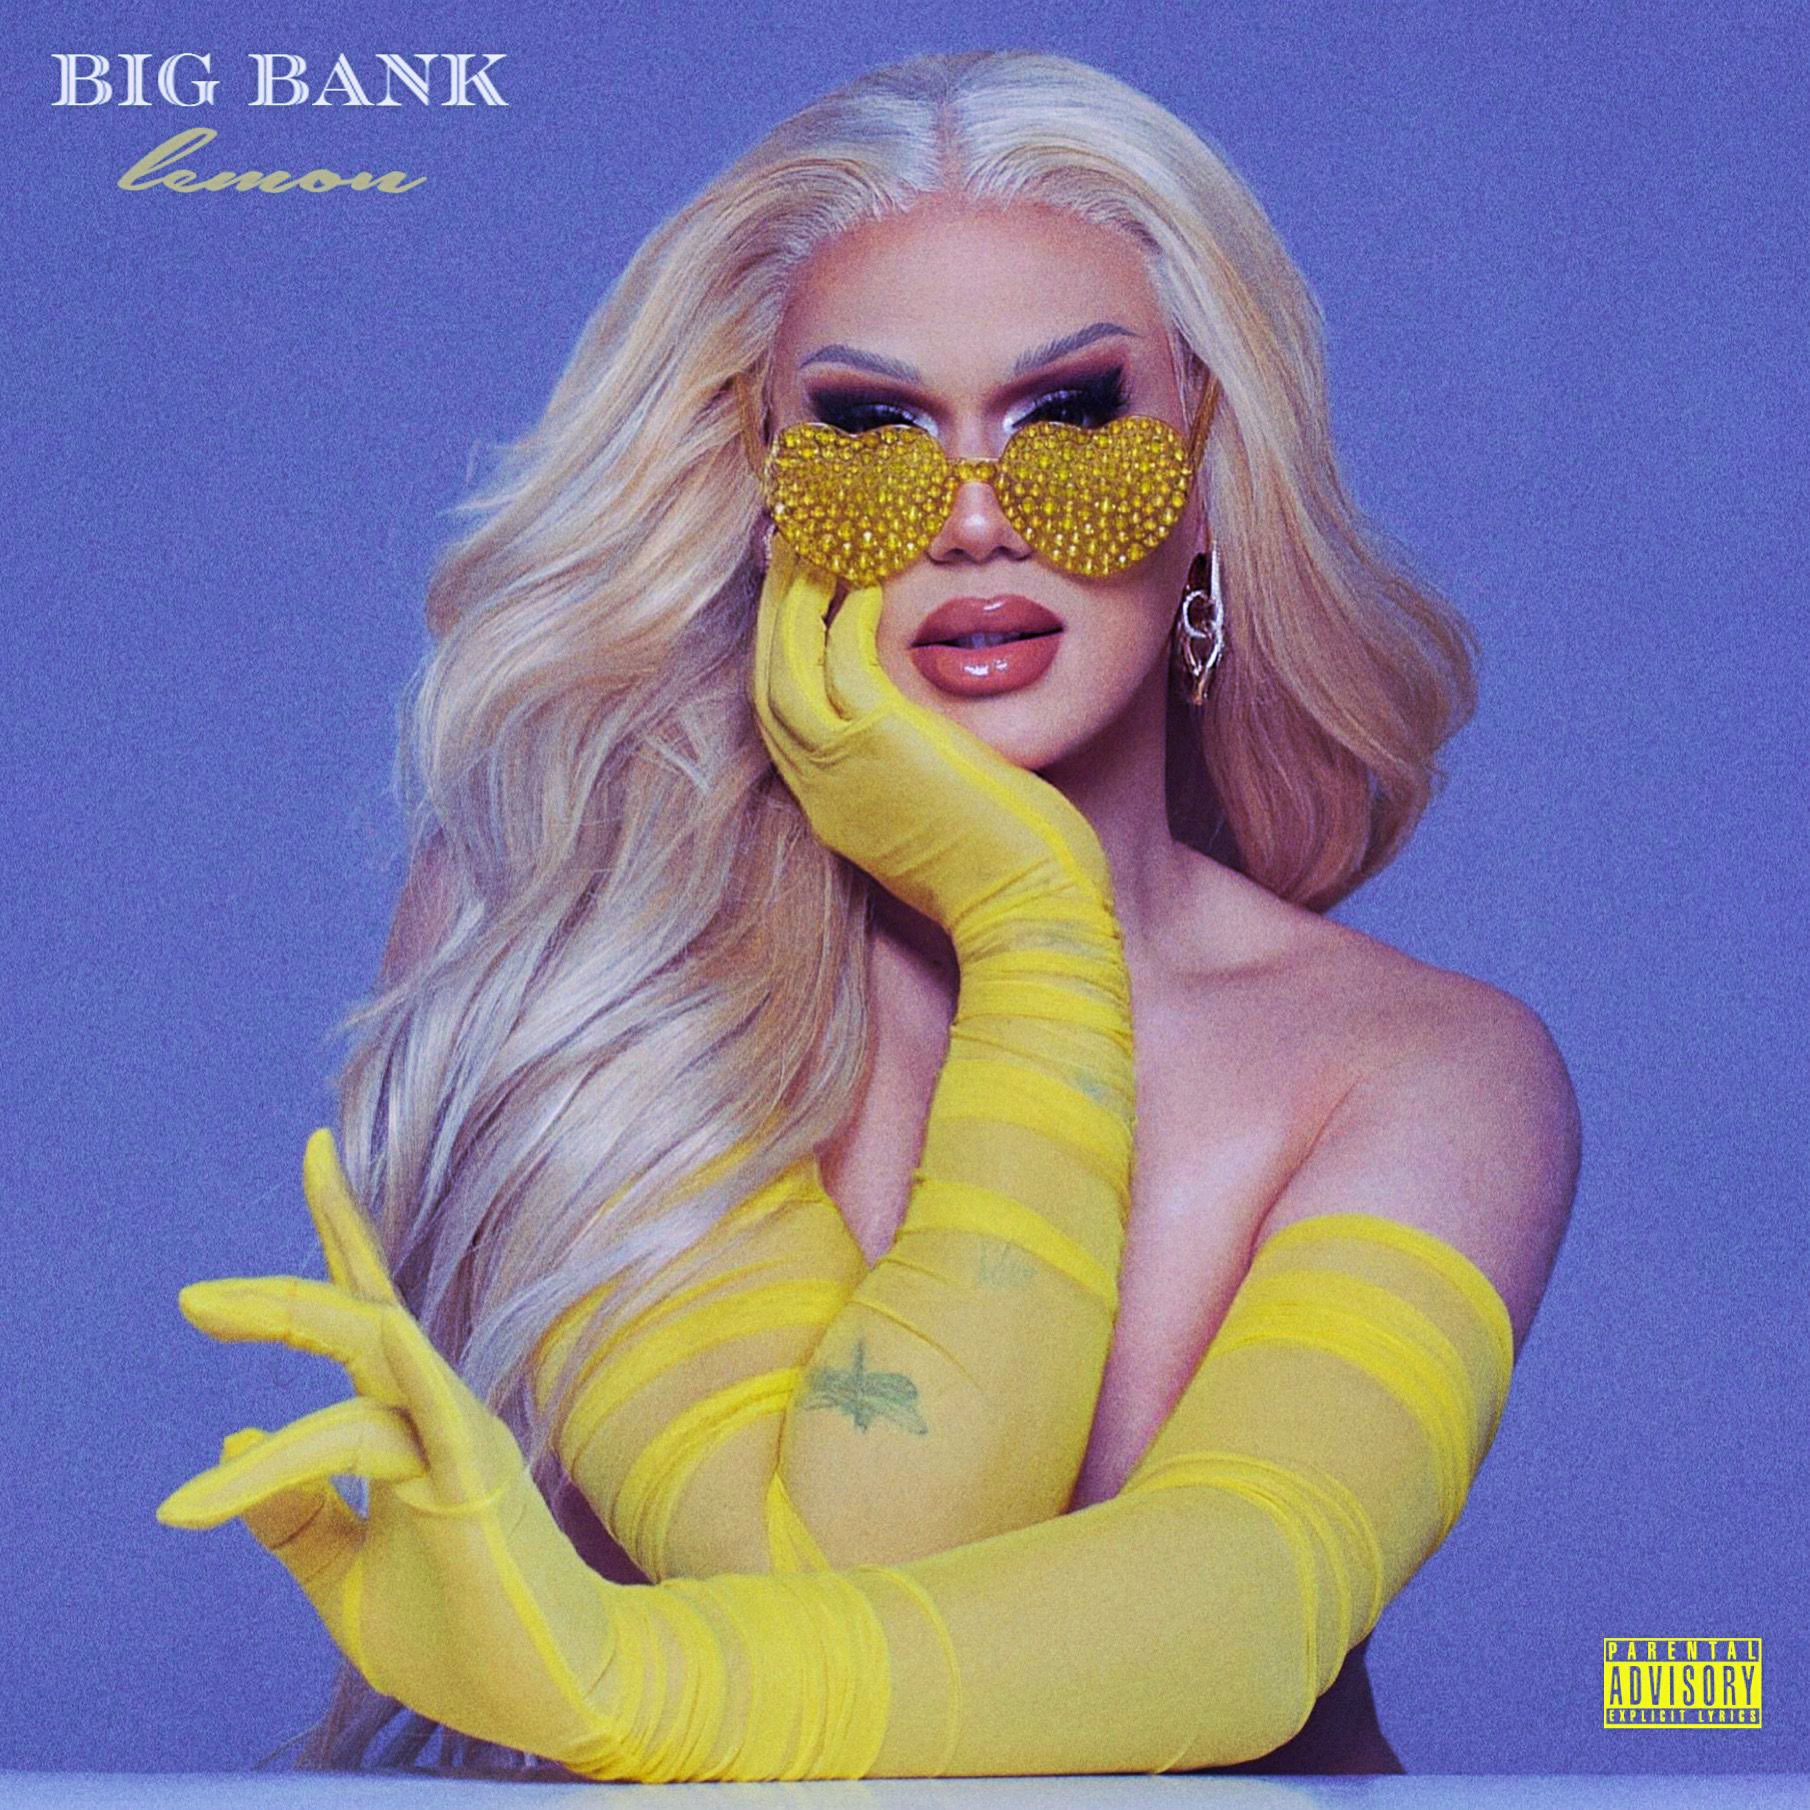 Lemon — Big Bank cover artwork